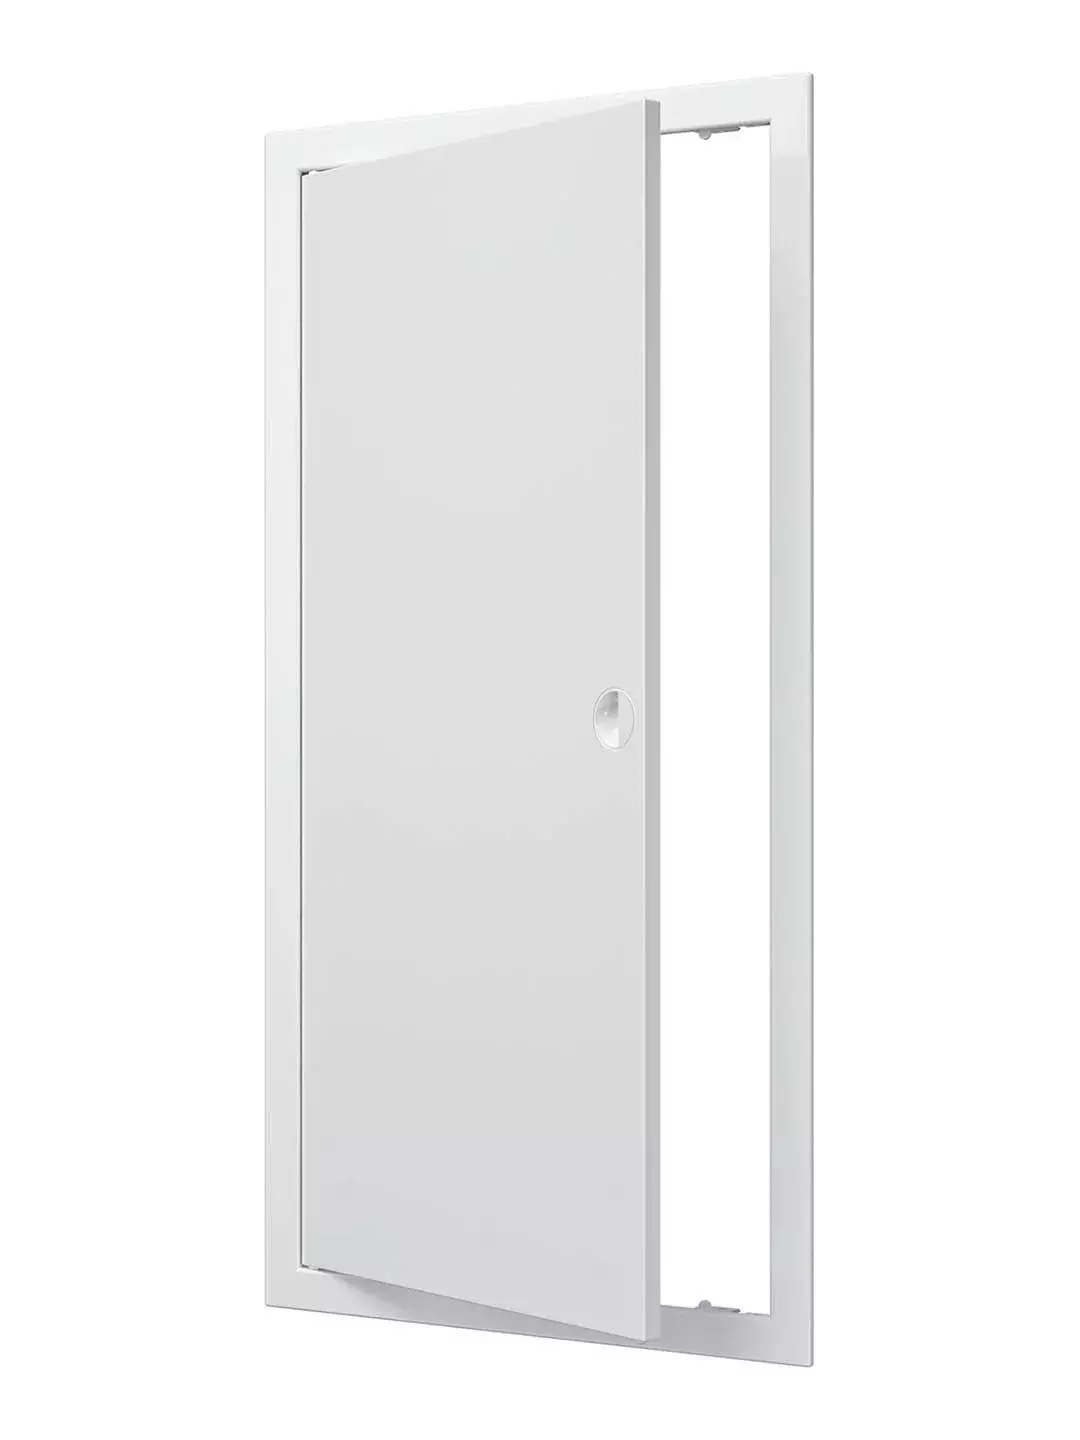 Люк-дверца ревизионный с ручкой 300х600 мм, ЭРА Л3060Р, пластиковый